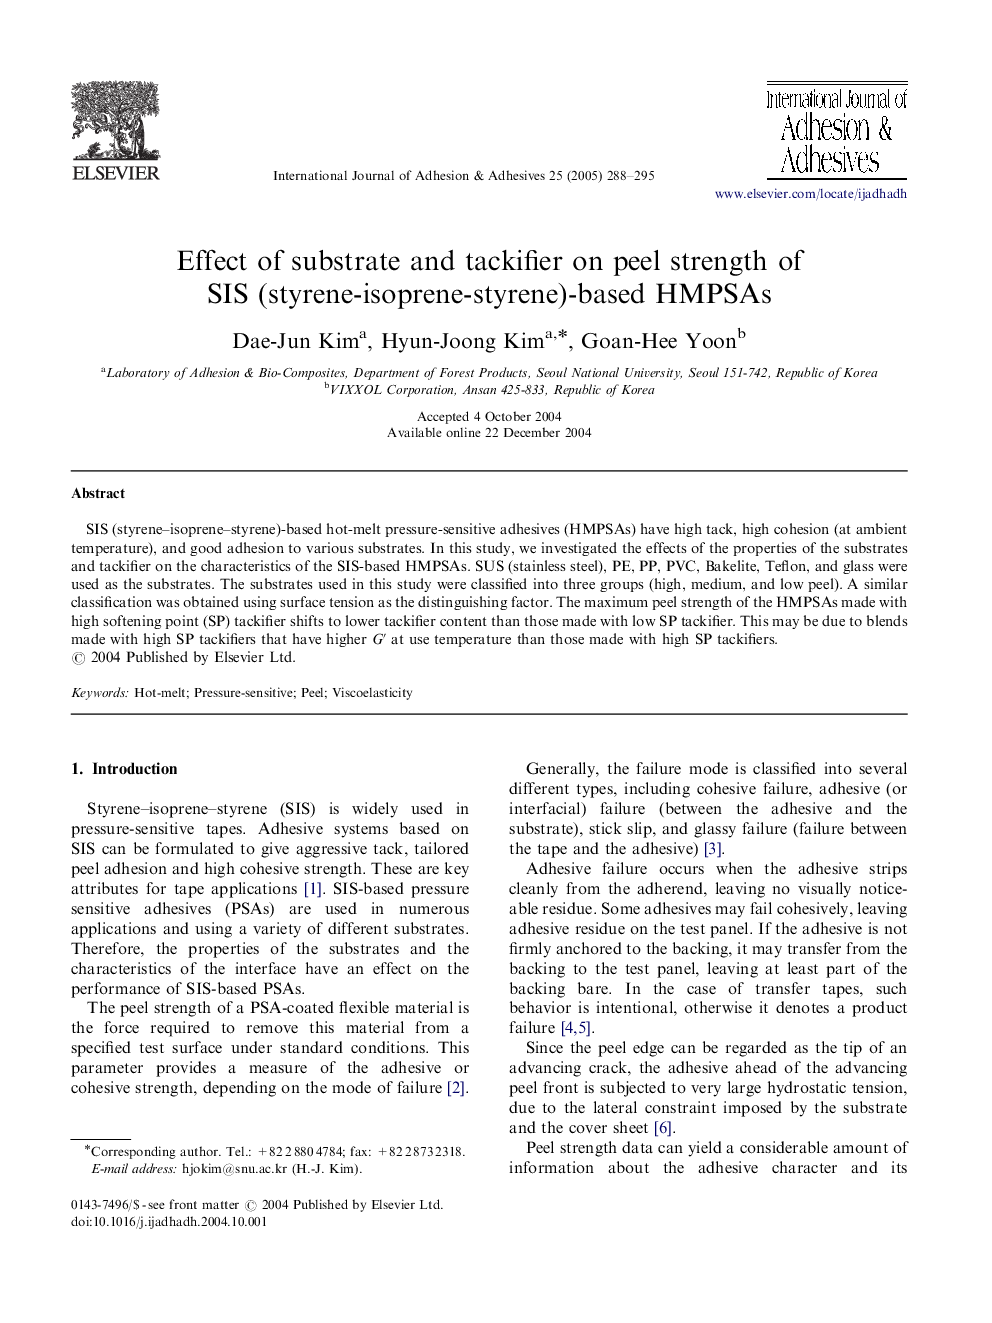 Effect of substrate and tackifier on peel strength of SIS (styrene-isoprene-styrene)-based HMPSAs